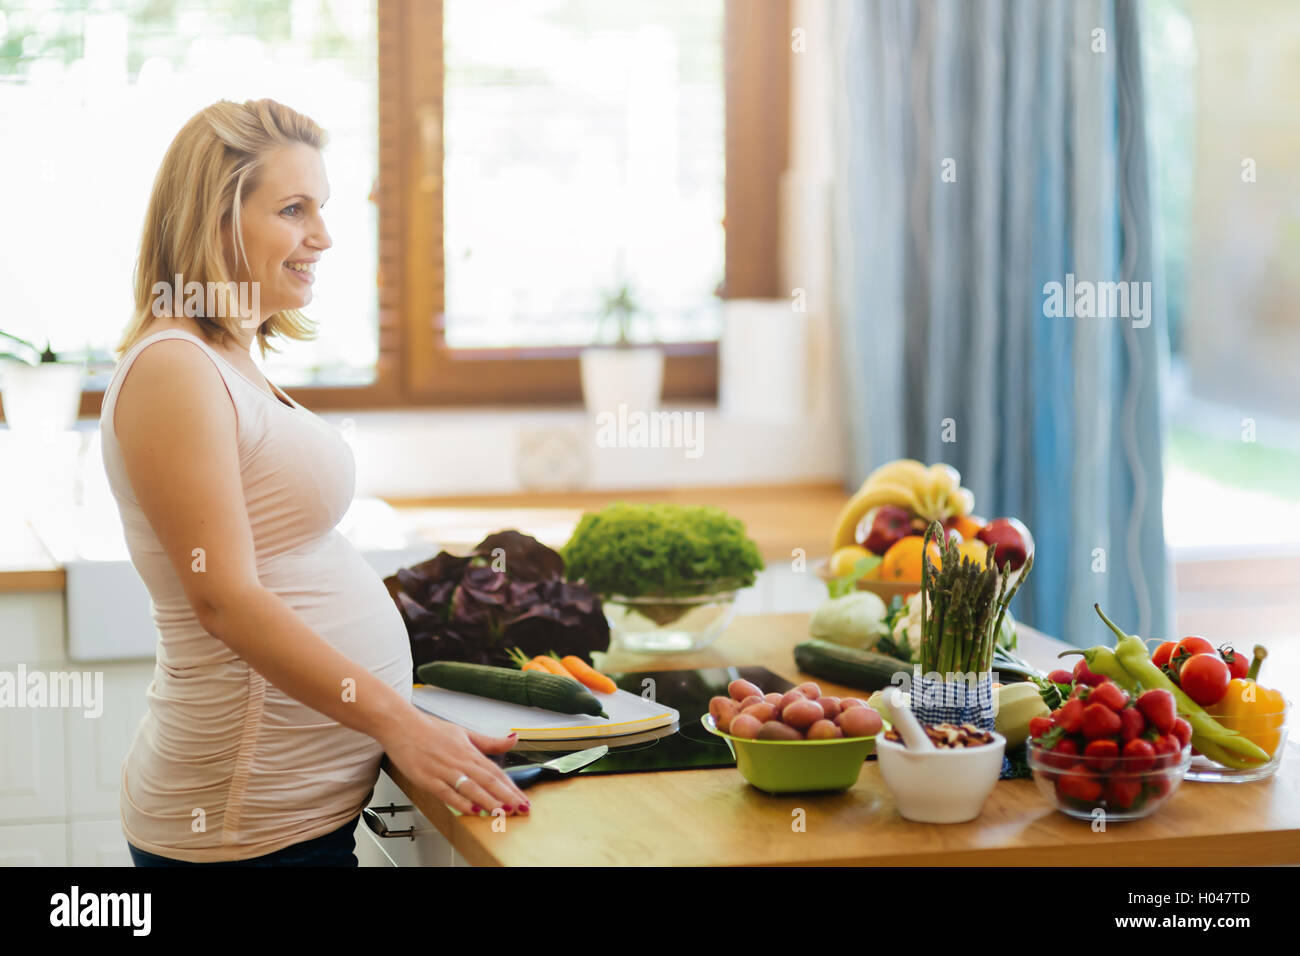 Belle femme enceinte, la préparation de repas sur l'île de cuisine à partir de produits frais Banque D'Images